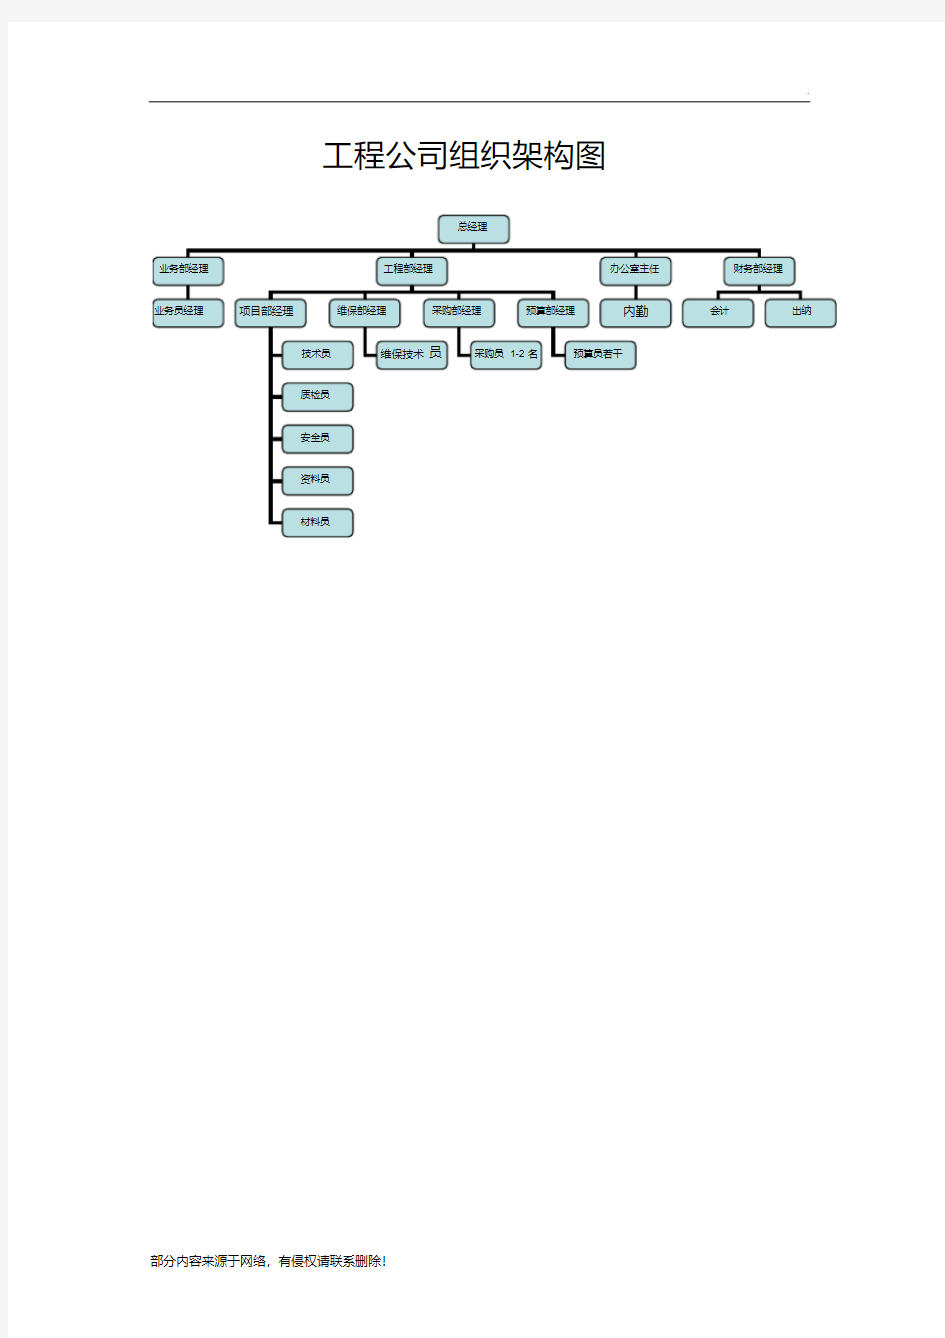 工程公司组织架构图